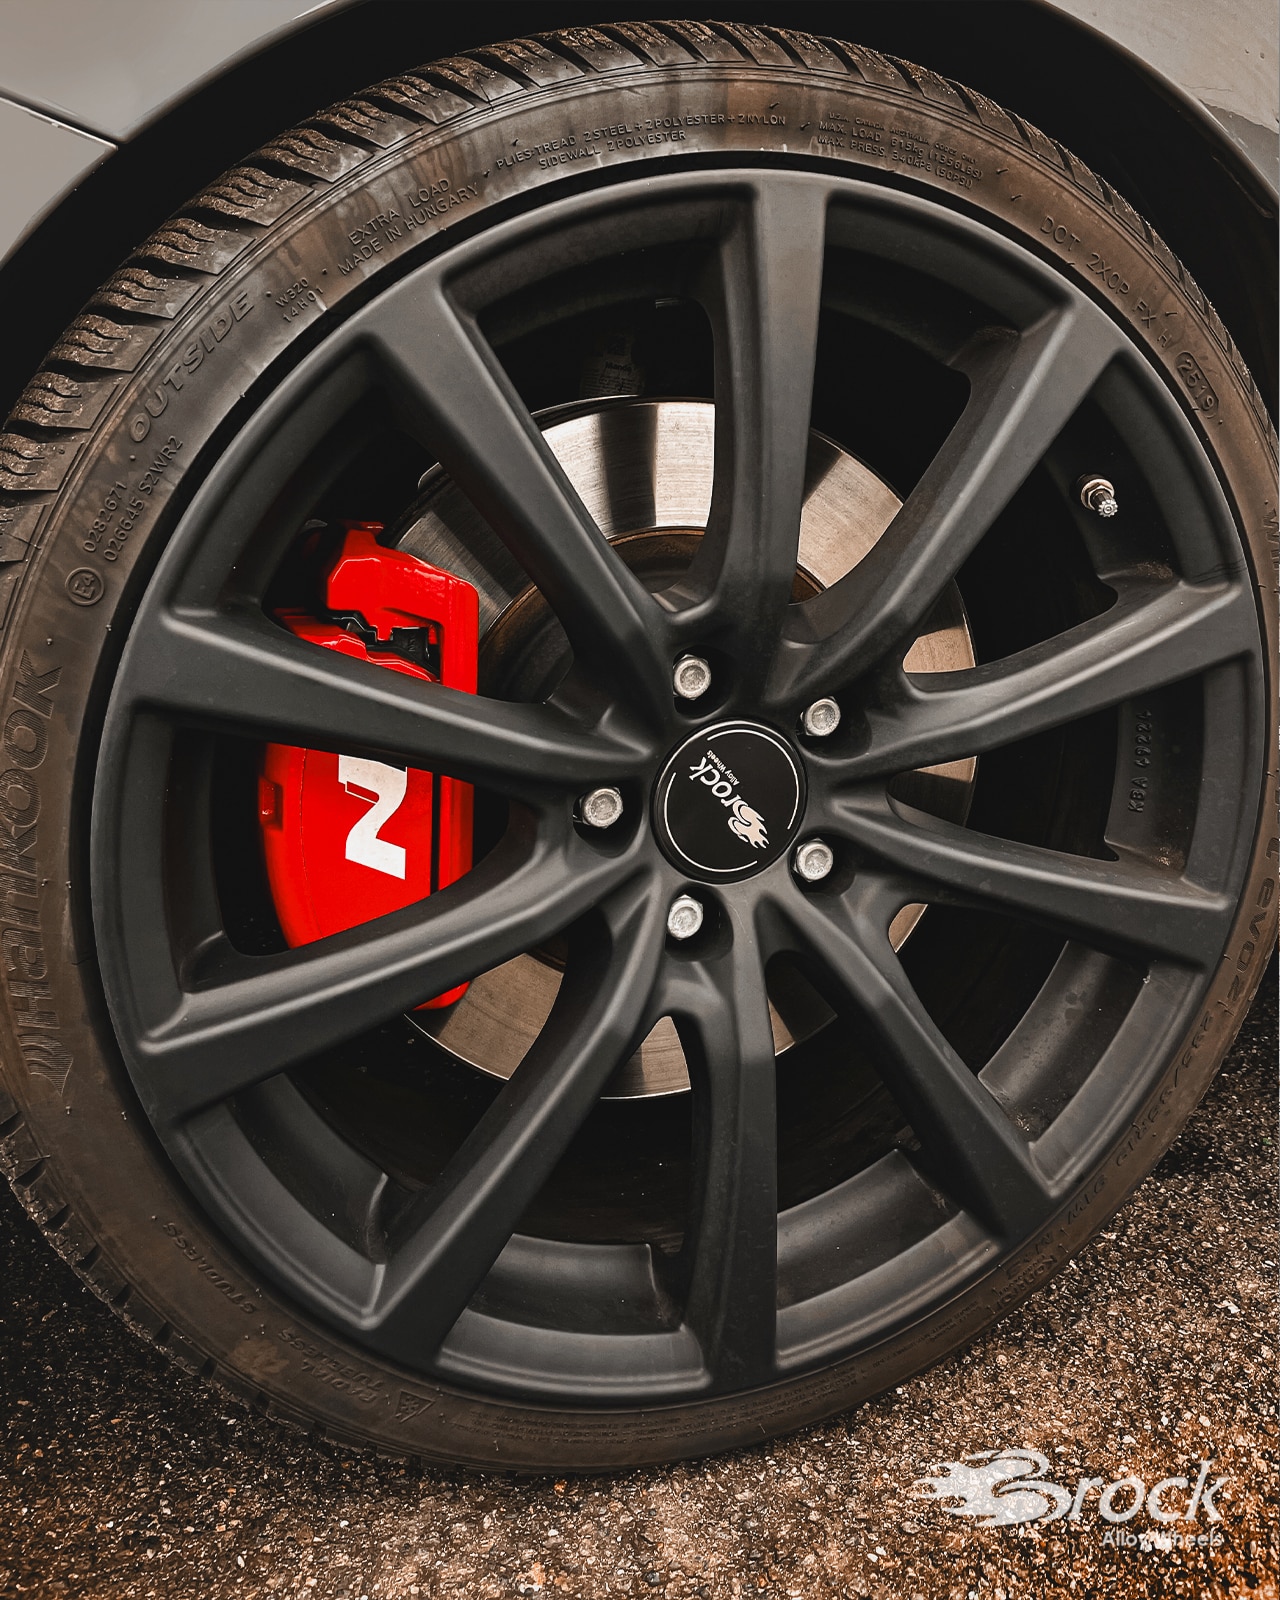 19 inch alloy wheels Brock B32 for Hyundai i30N Performance